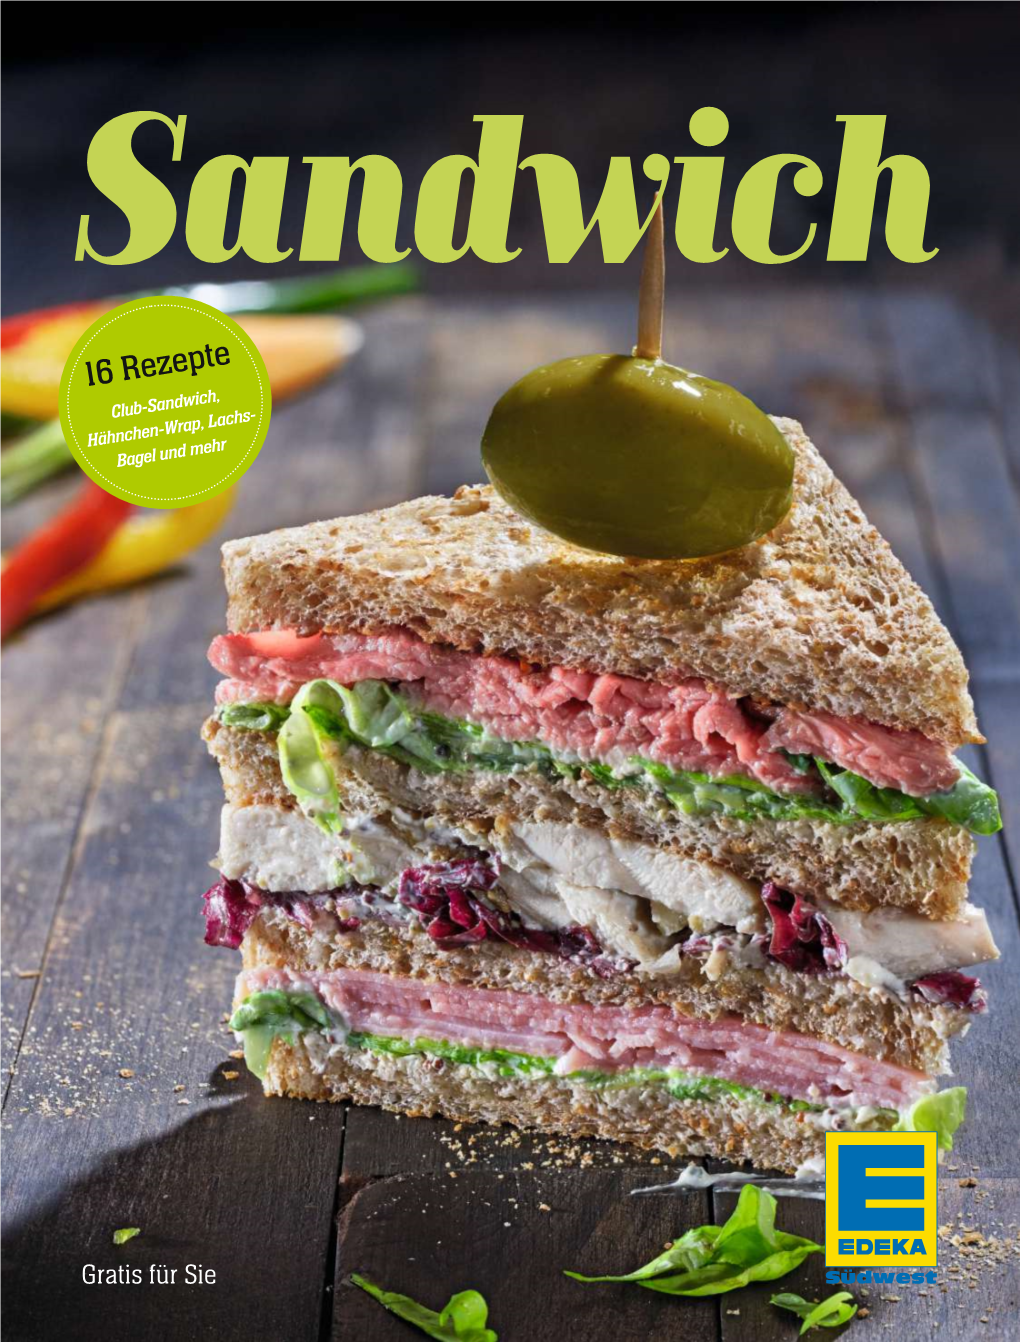 16 Rezepte Club-Sandwich, Lachs- Hnchen-Wrap, Hä Mehr Bagel Und